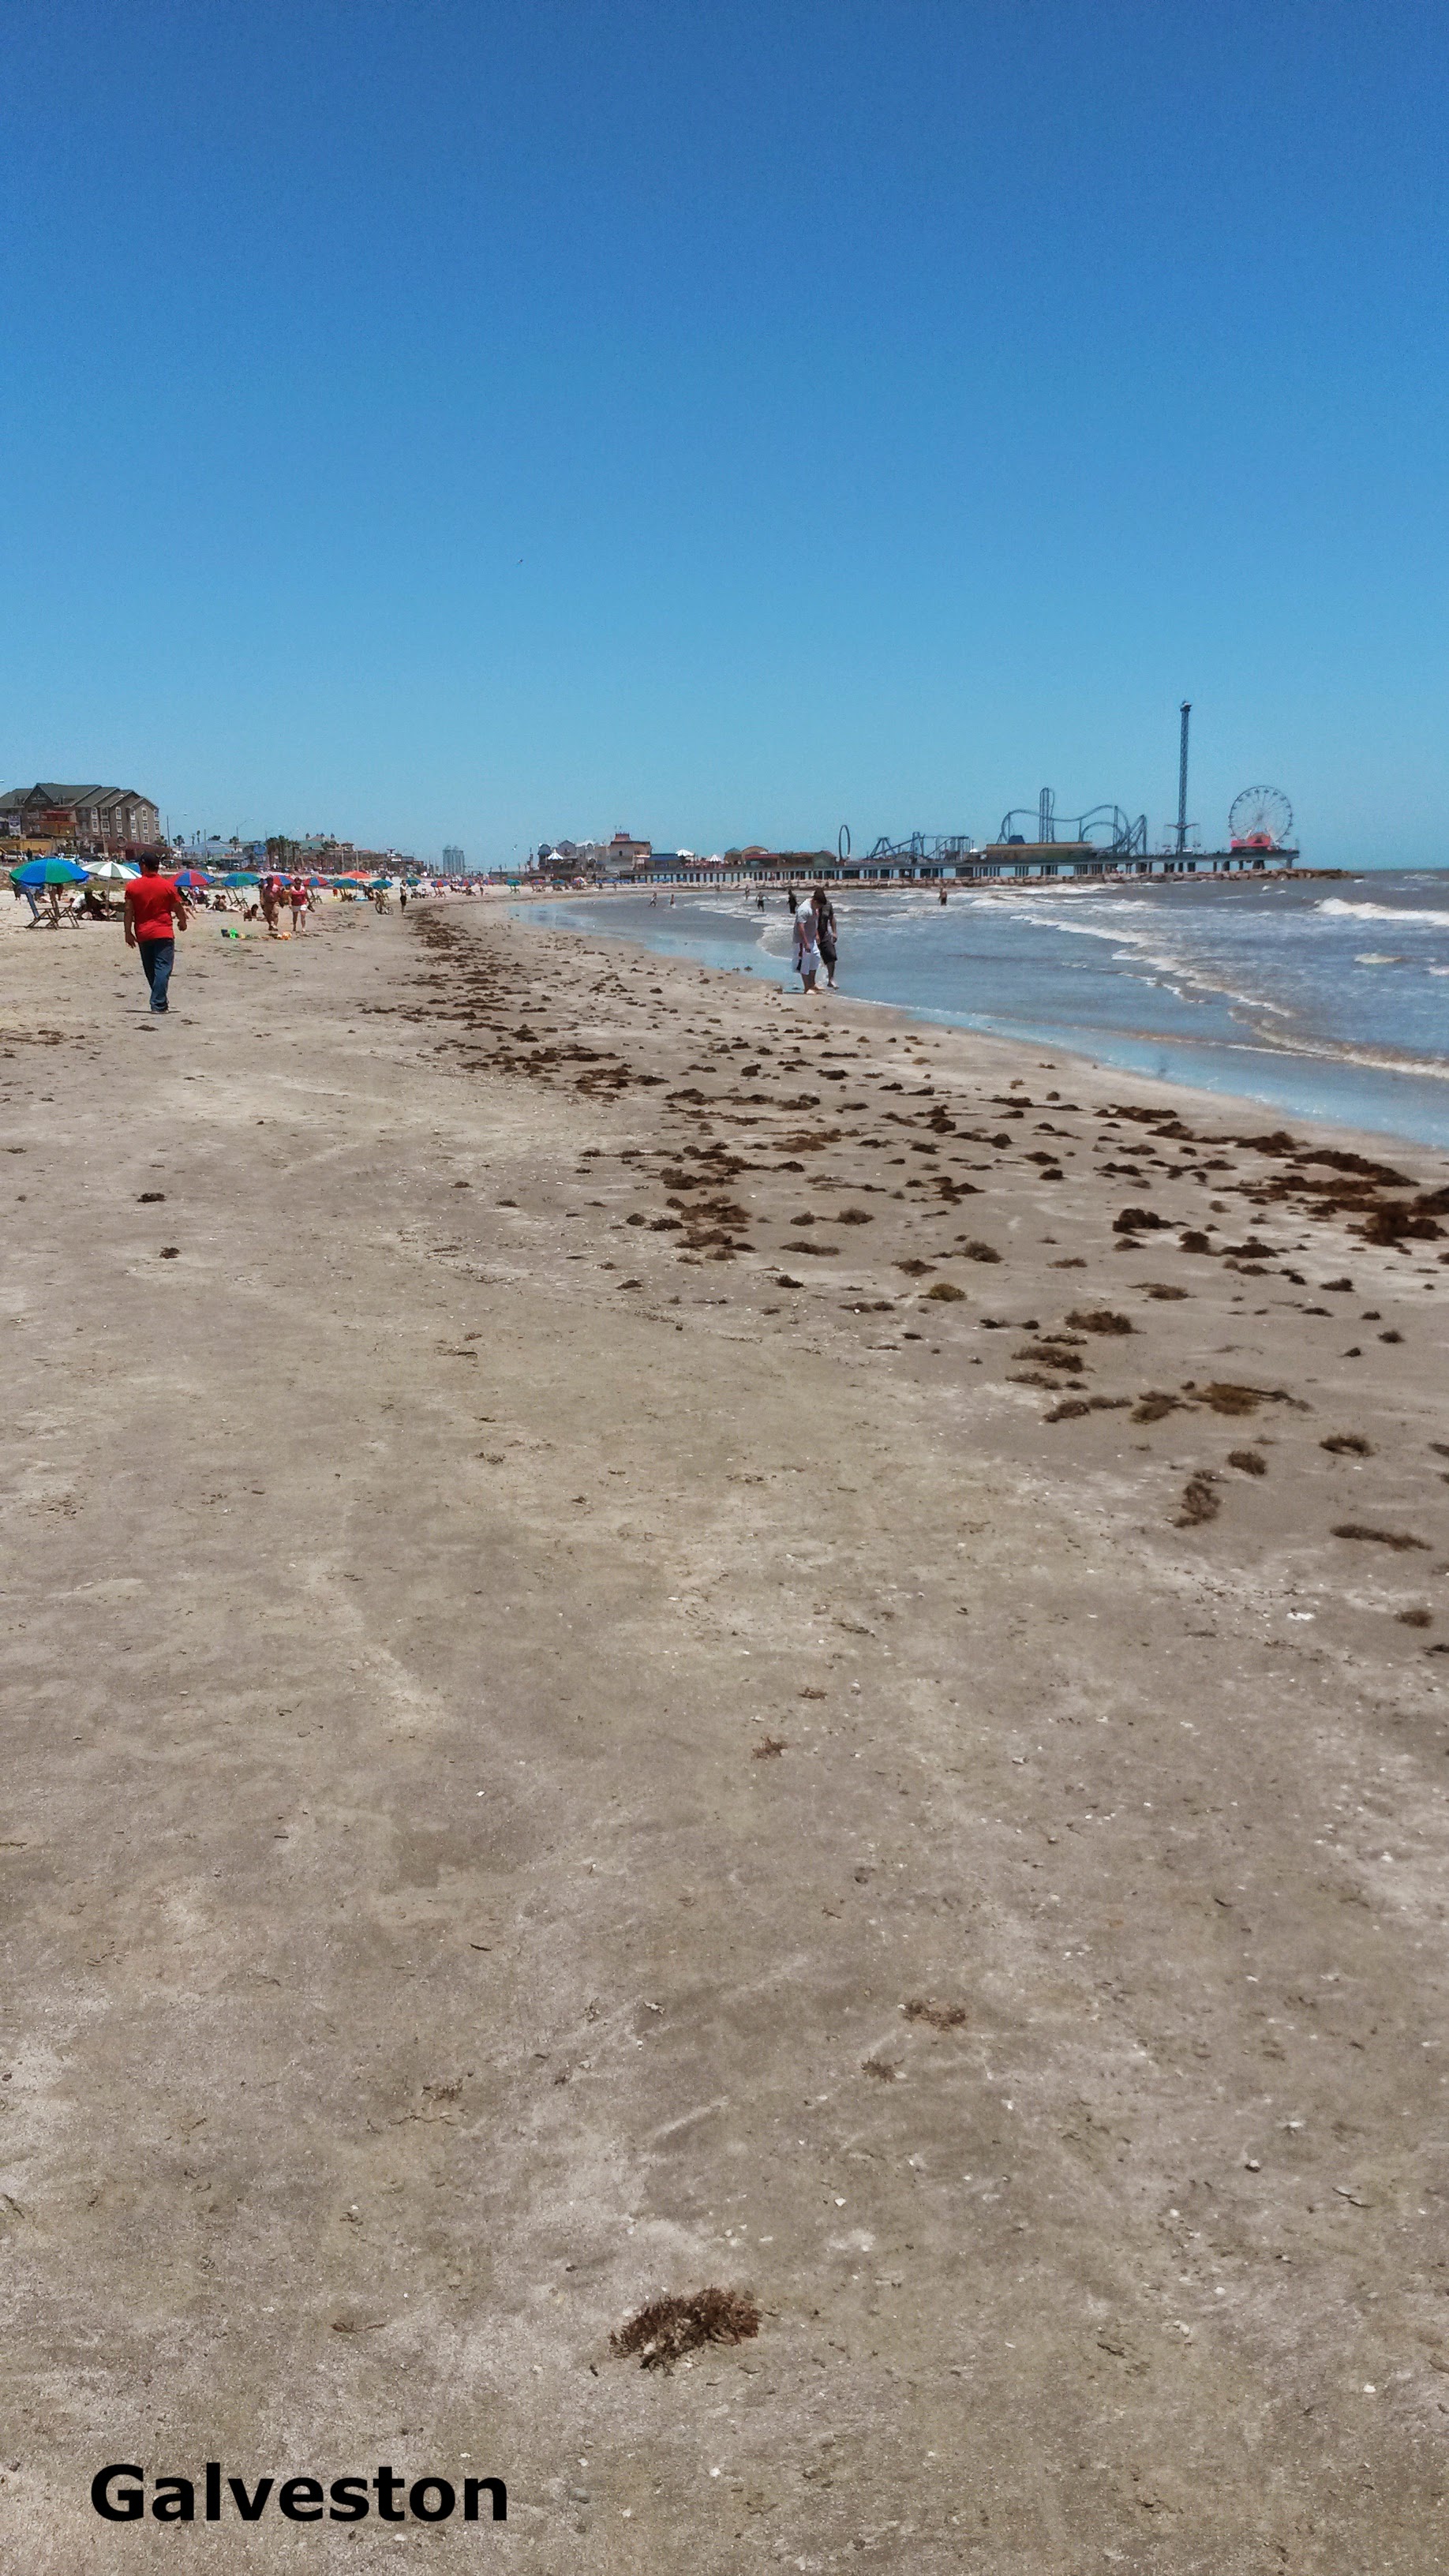 Beaches of Galveston